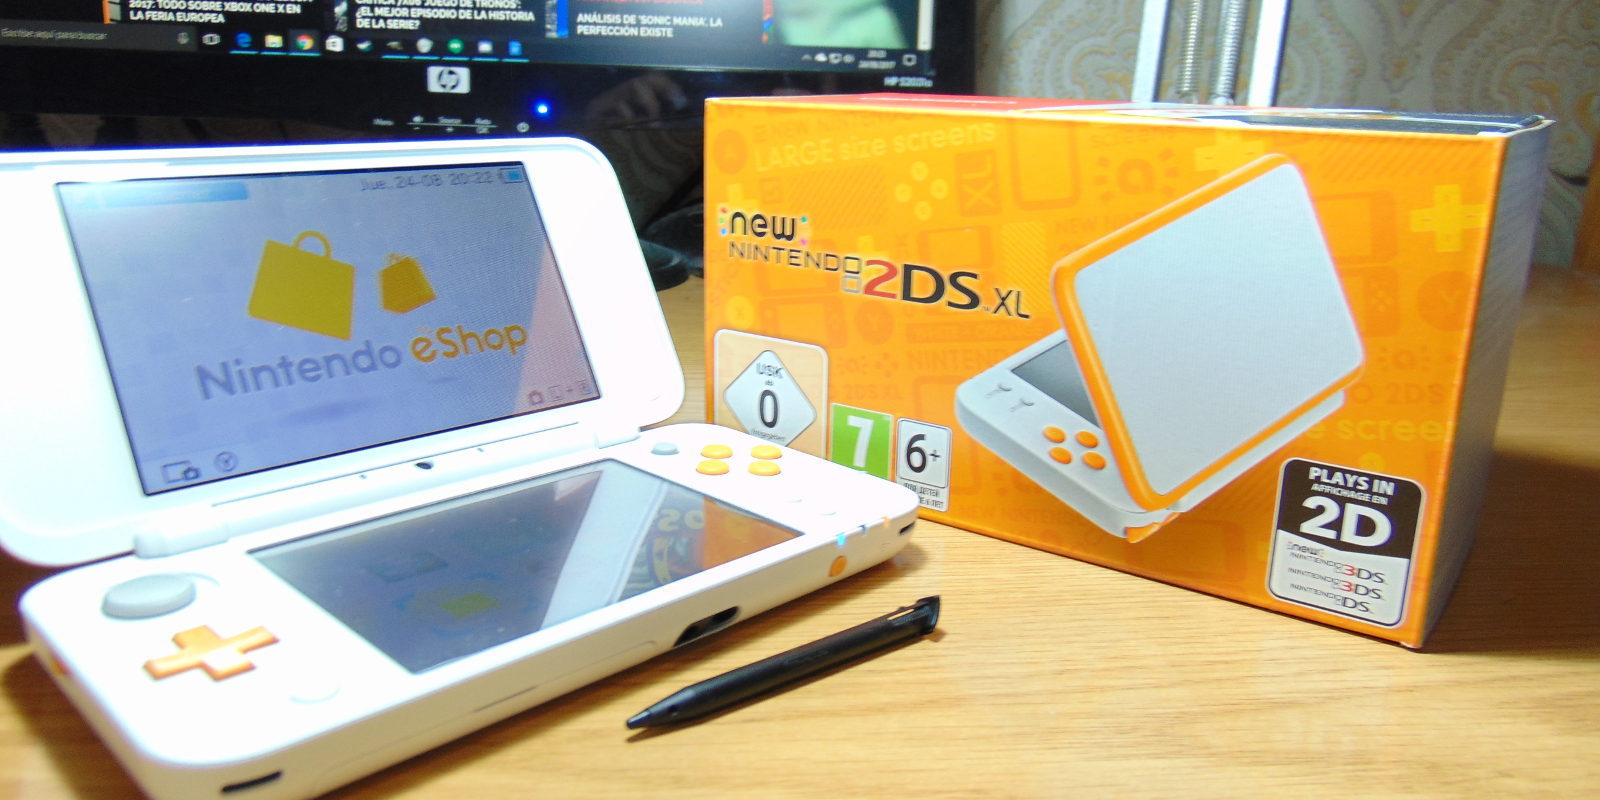 Calma Beneficiario reunirse Análisis New Nintendo 2DS XL, ¿qué modelo de Nintendo 3DS comprar? - Zonared